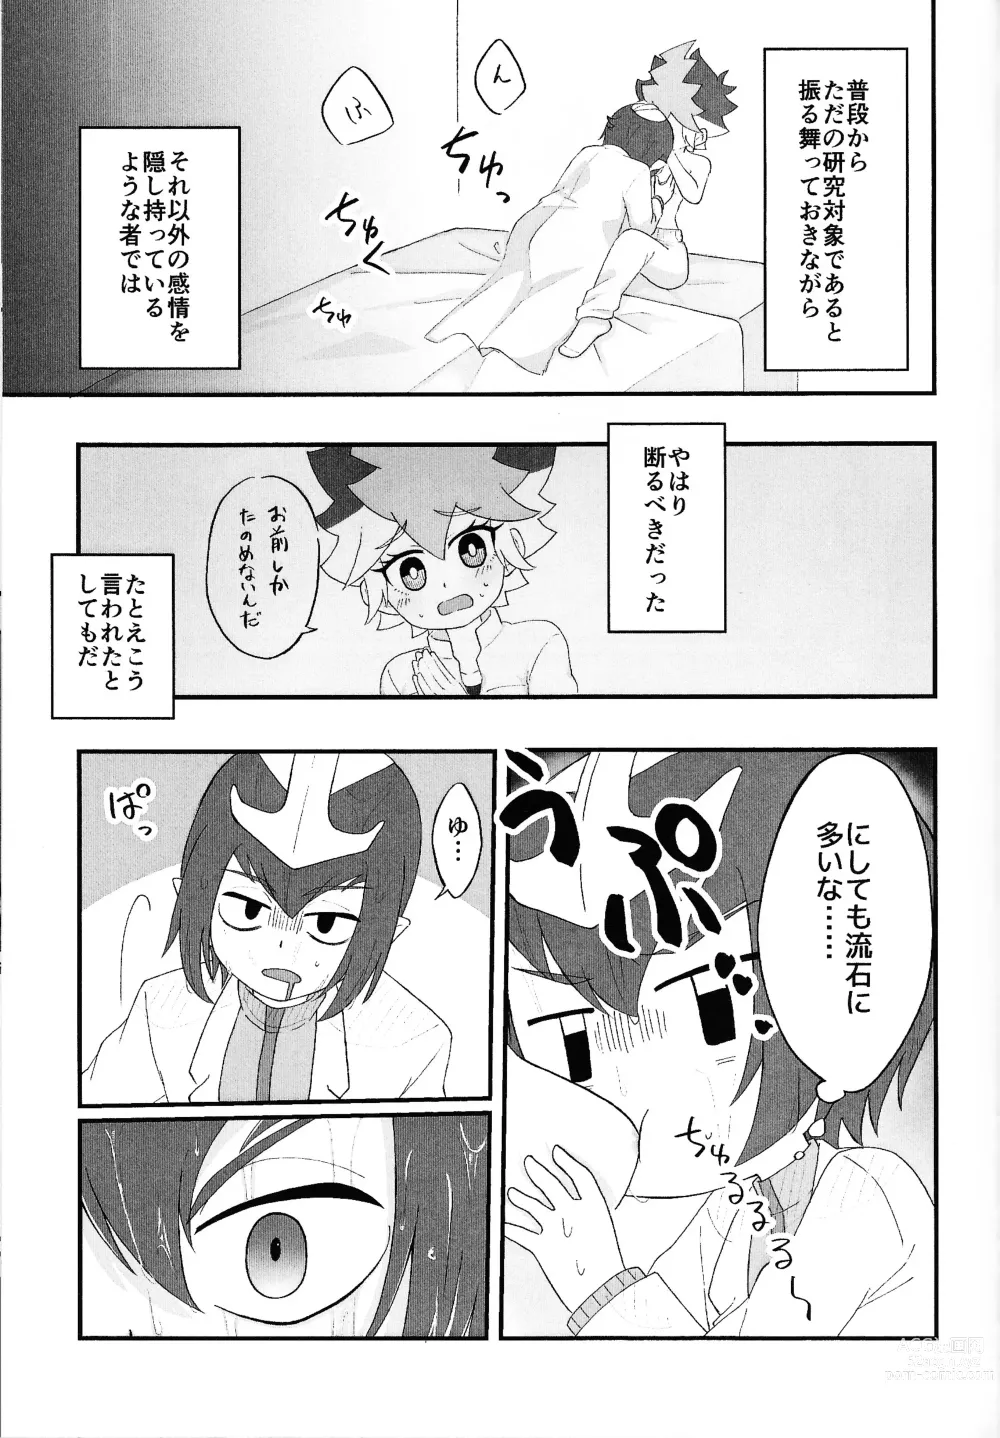 Page 20 of doujinshi Pandoranohako ka kindan no kajitsu ka